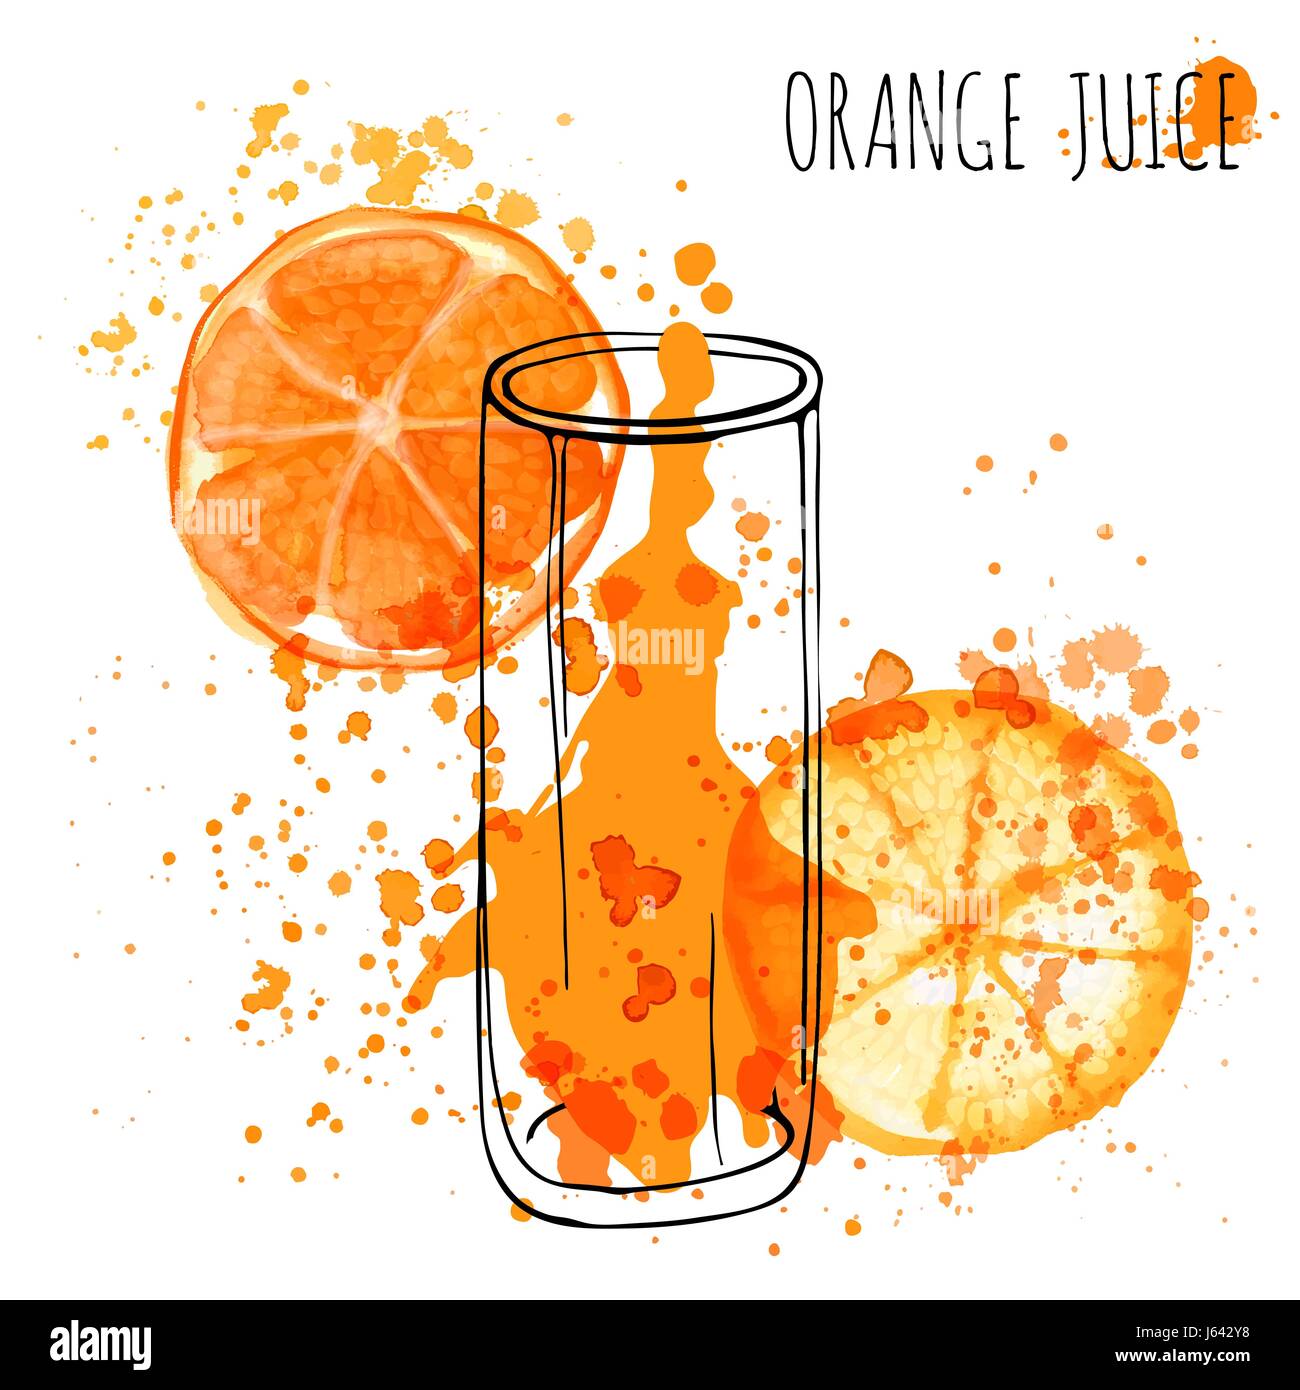 Orange Juice Splash, Vektor Hand zeichnen Aquarell Abbildung. Orangensaft im skizzierten Glas mit Spritzern Stock Vektor